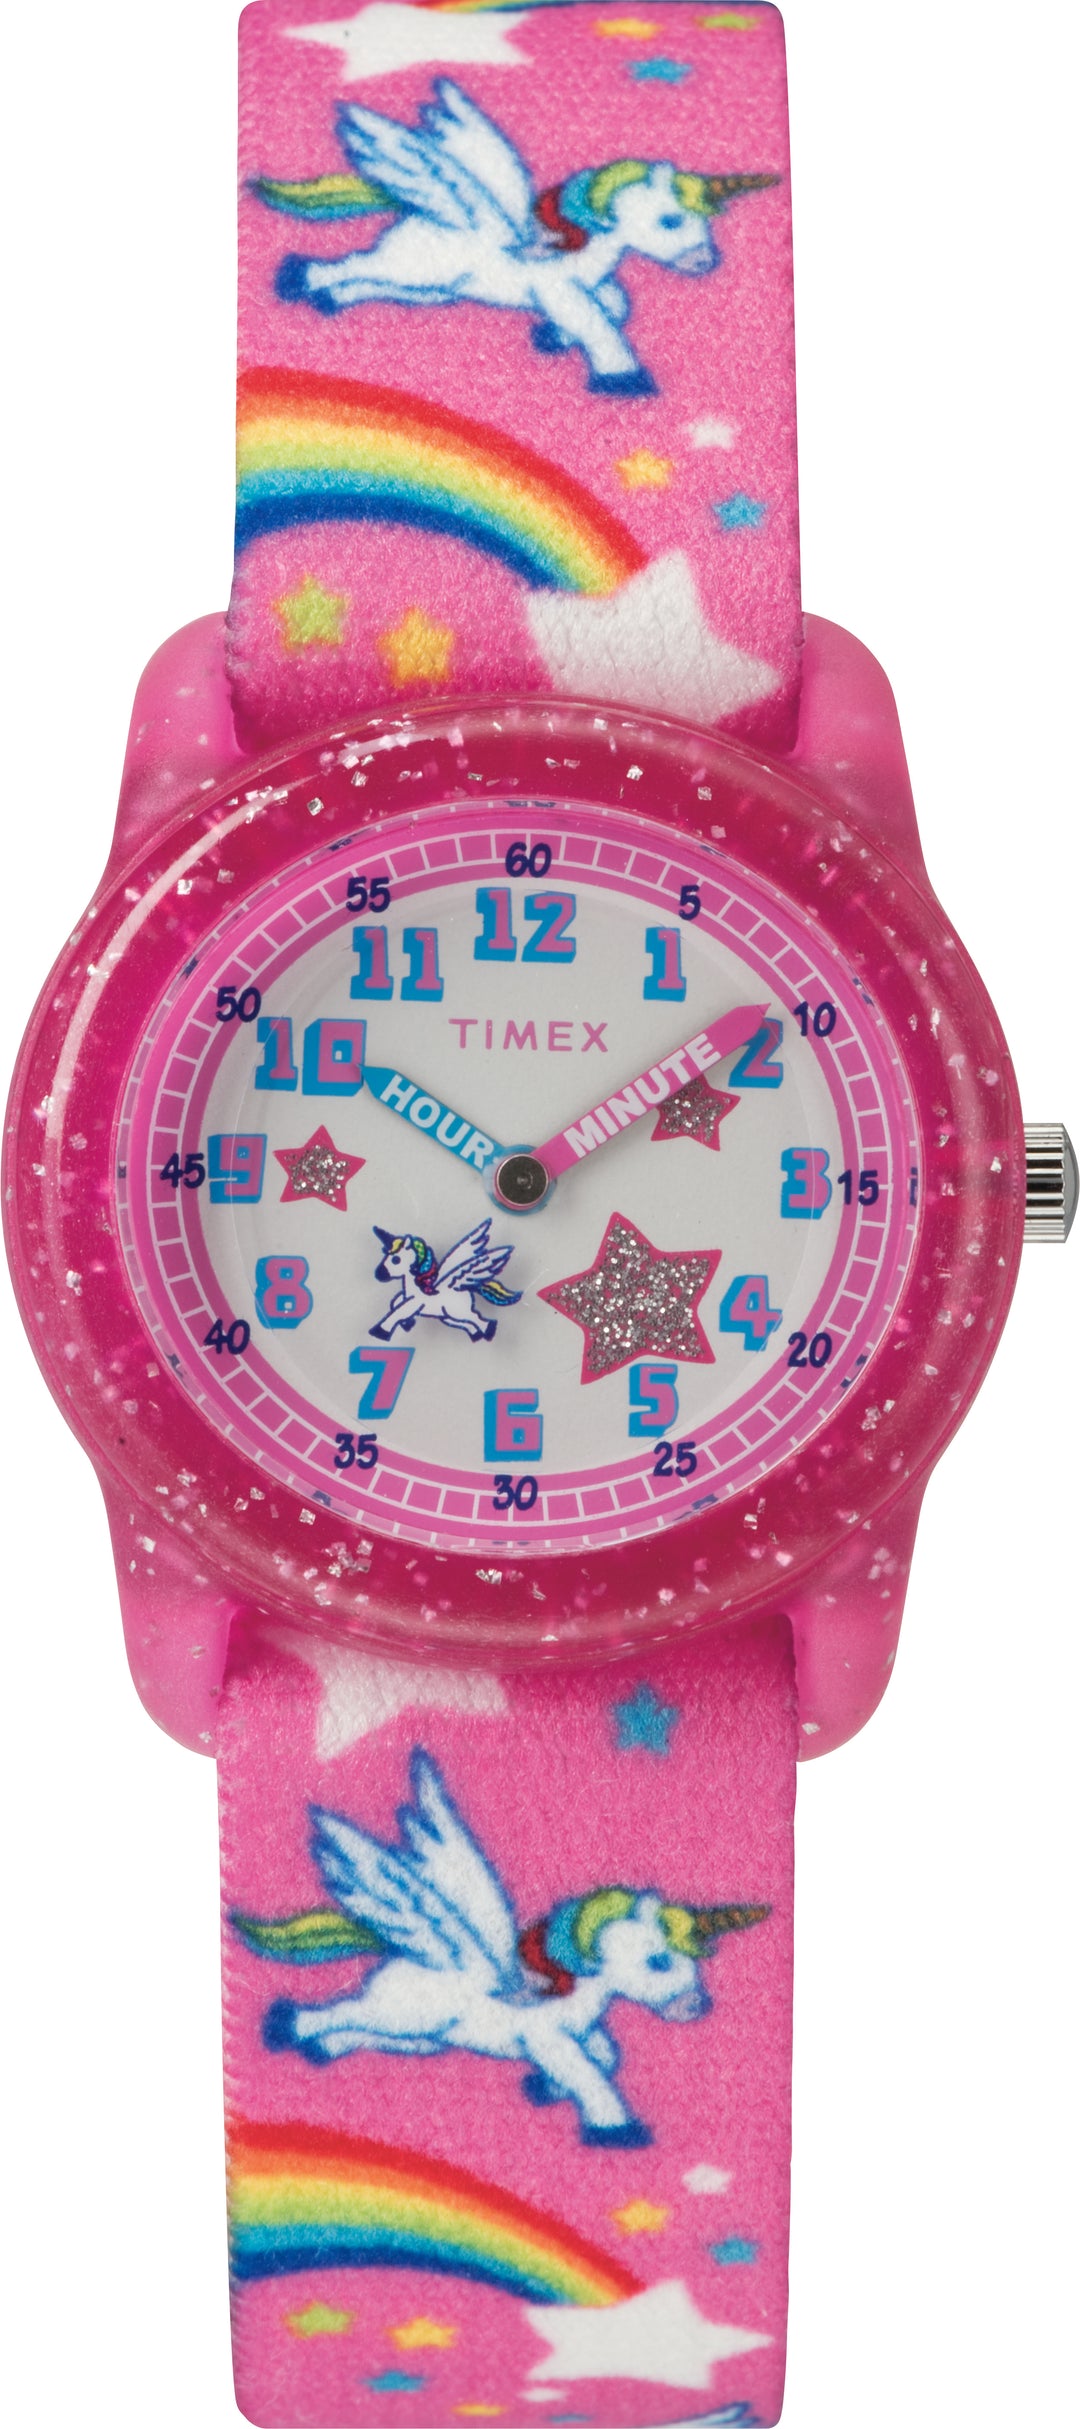 Timex Time Teacher Children's Watch